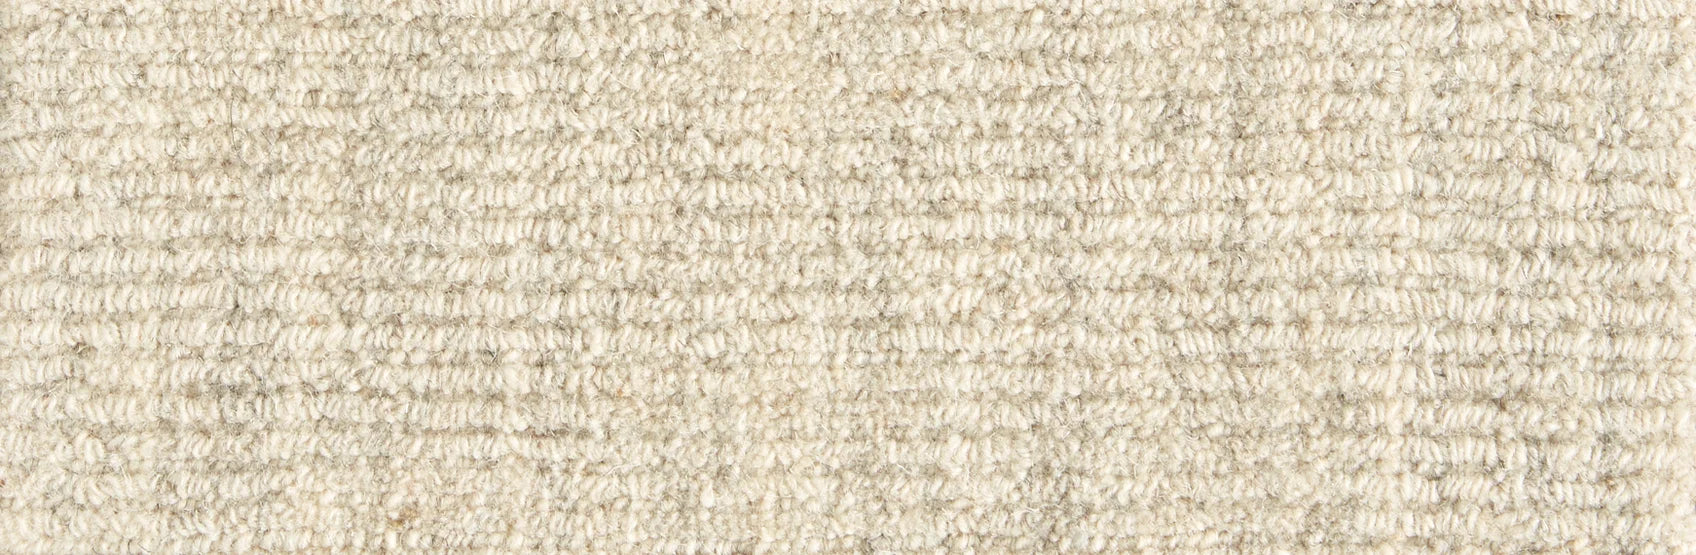 Hibernia - Magnum Opus - Carpet